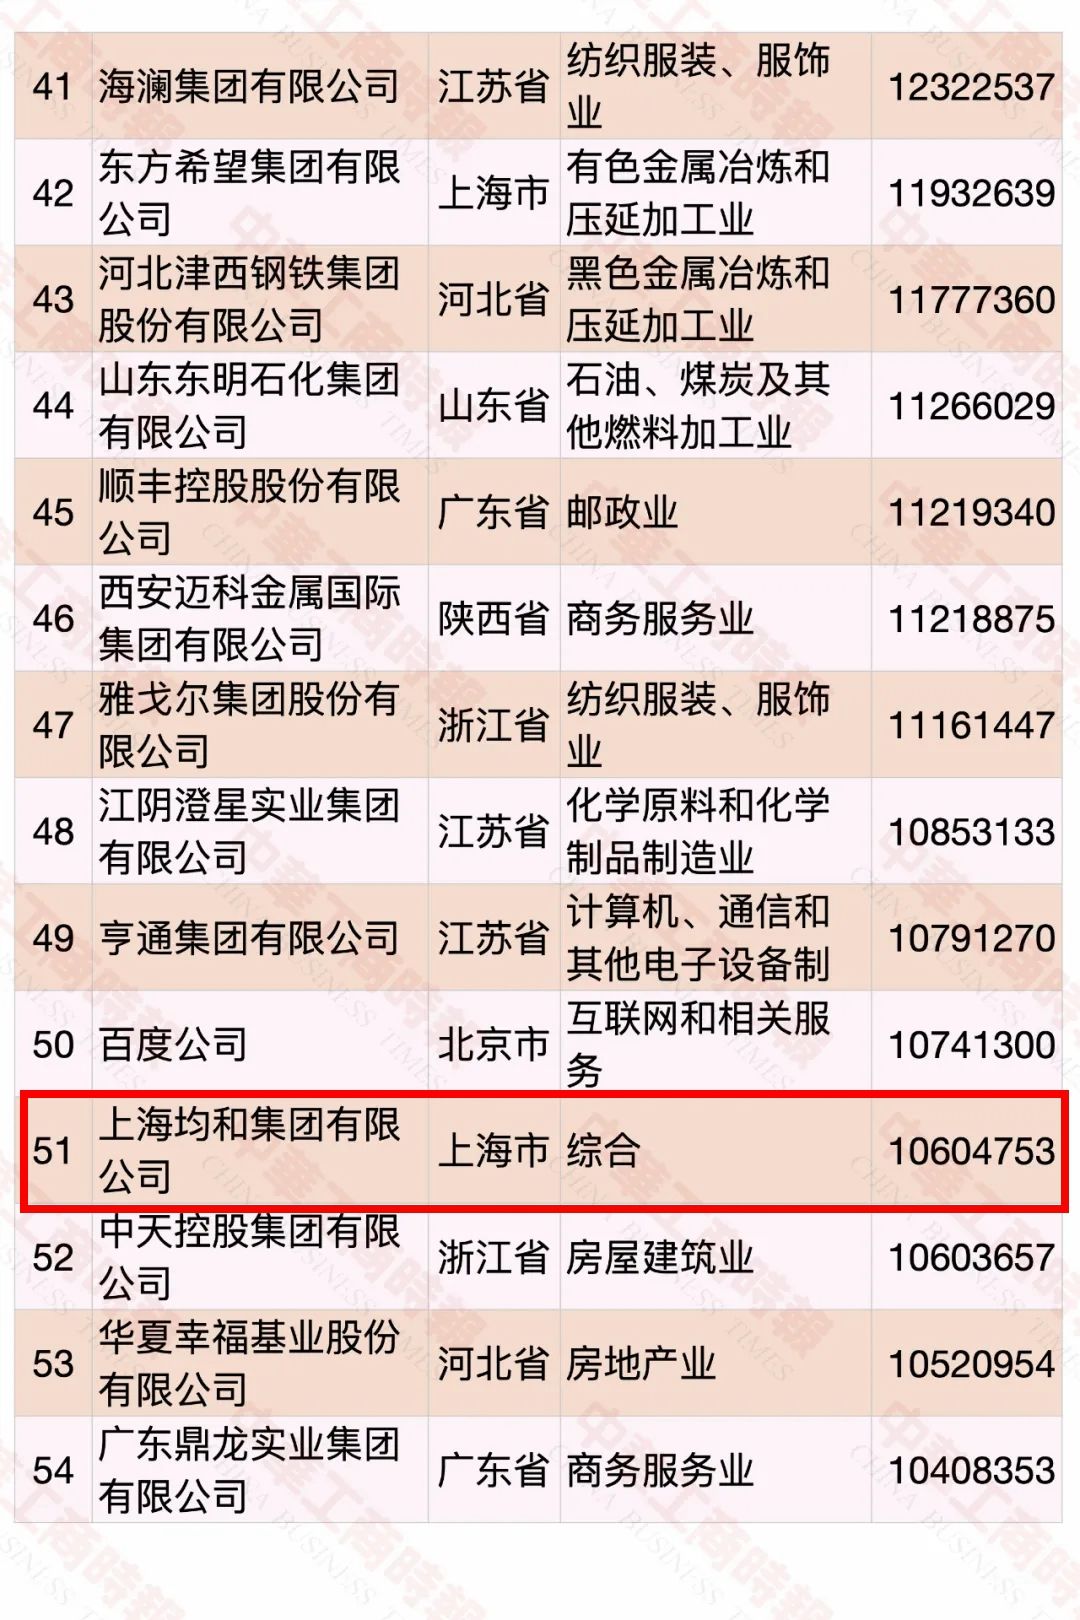 2020中国民营企业500强榜单出炉均和集团排名第51位